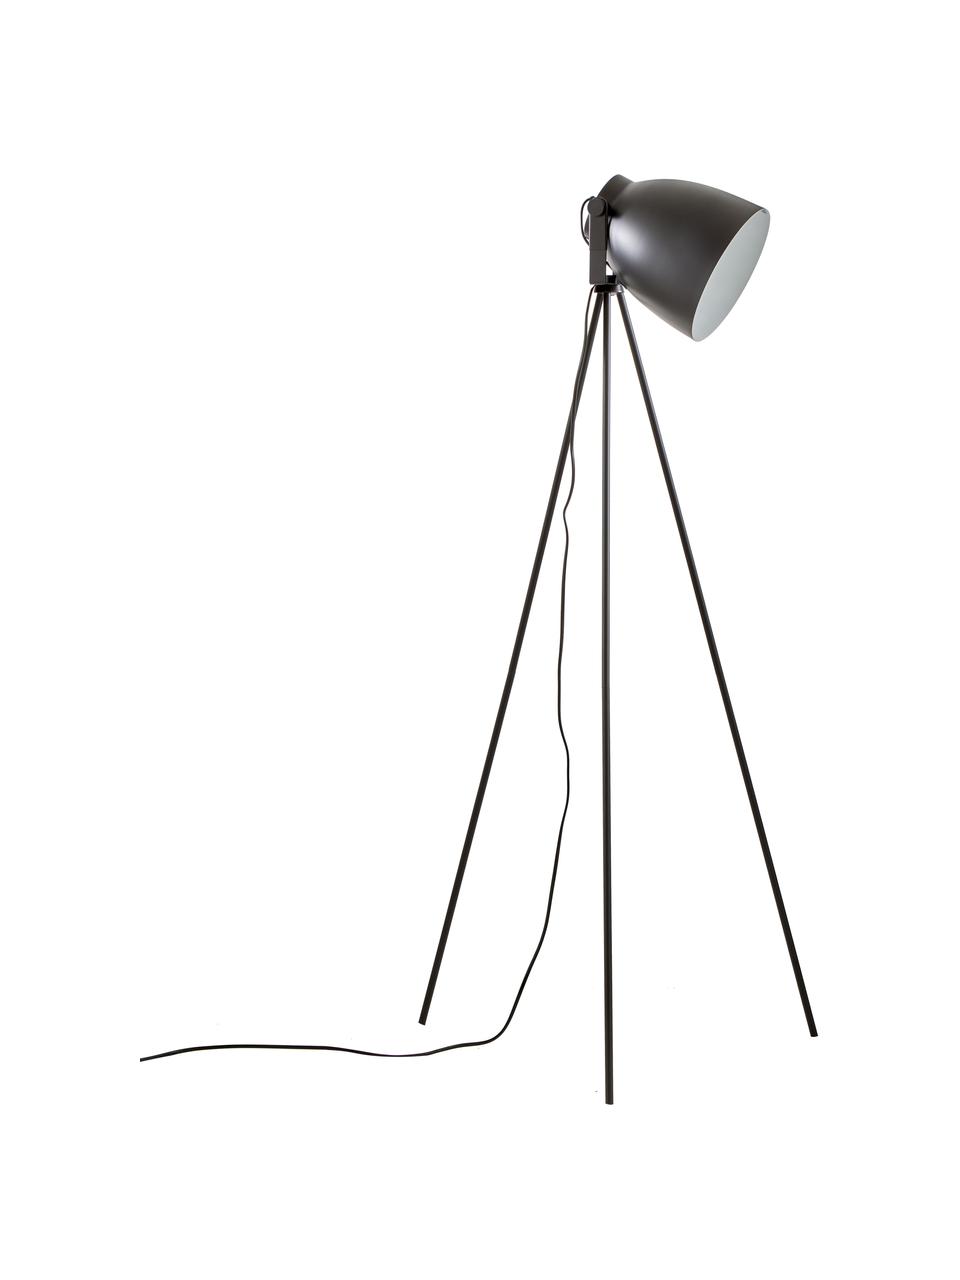 Lampa do czytania trójnóg Studio, Czarny matowy, Ø 58 x W 130 cm